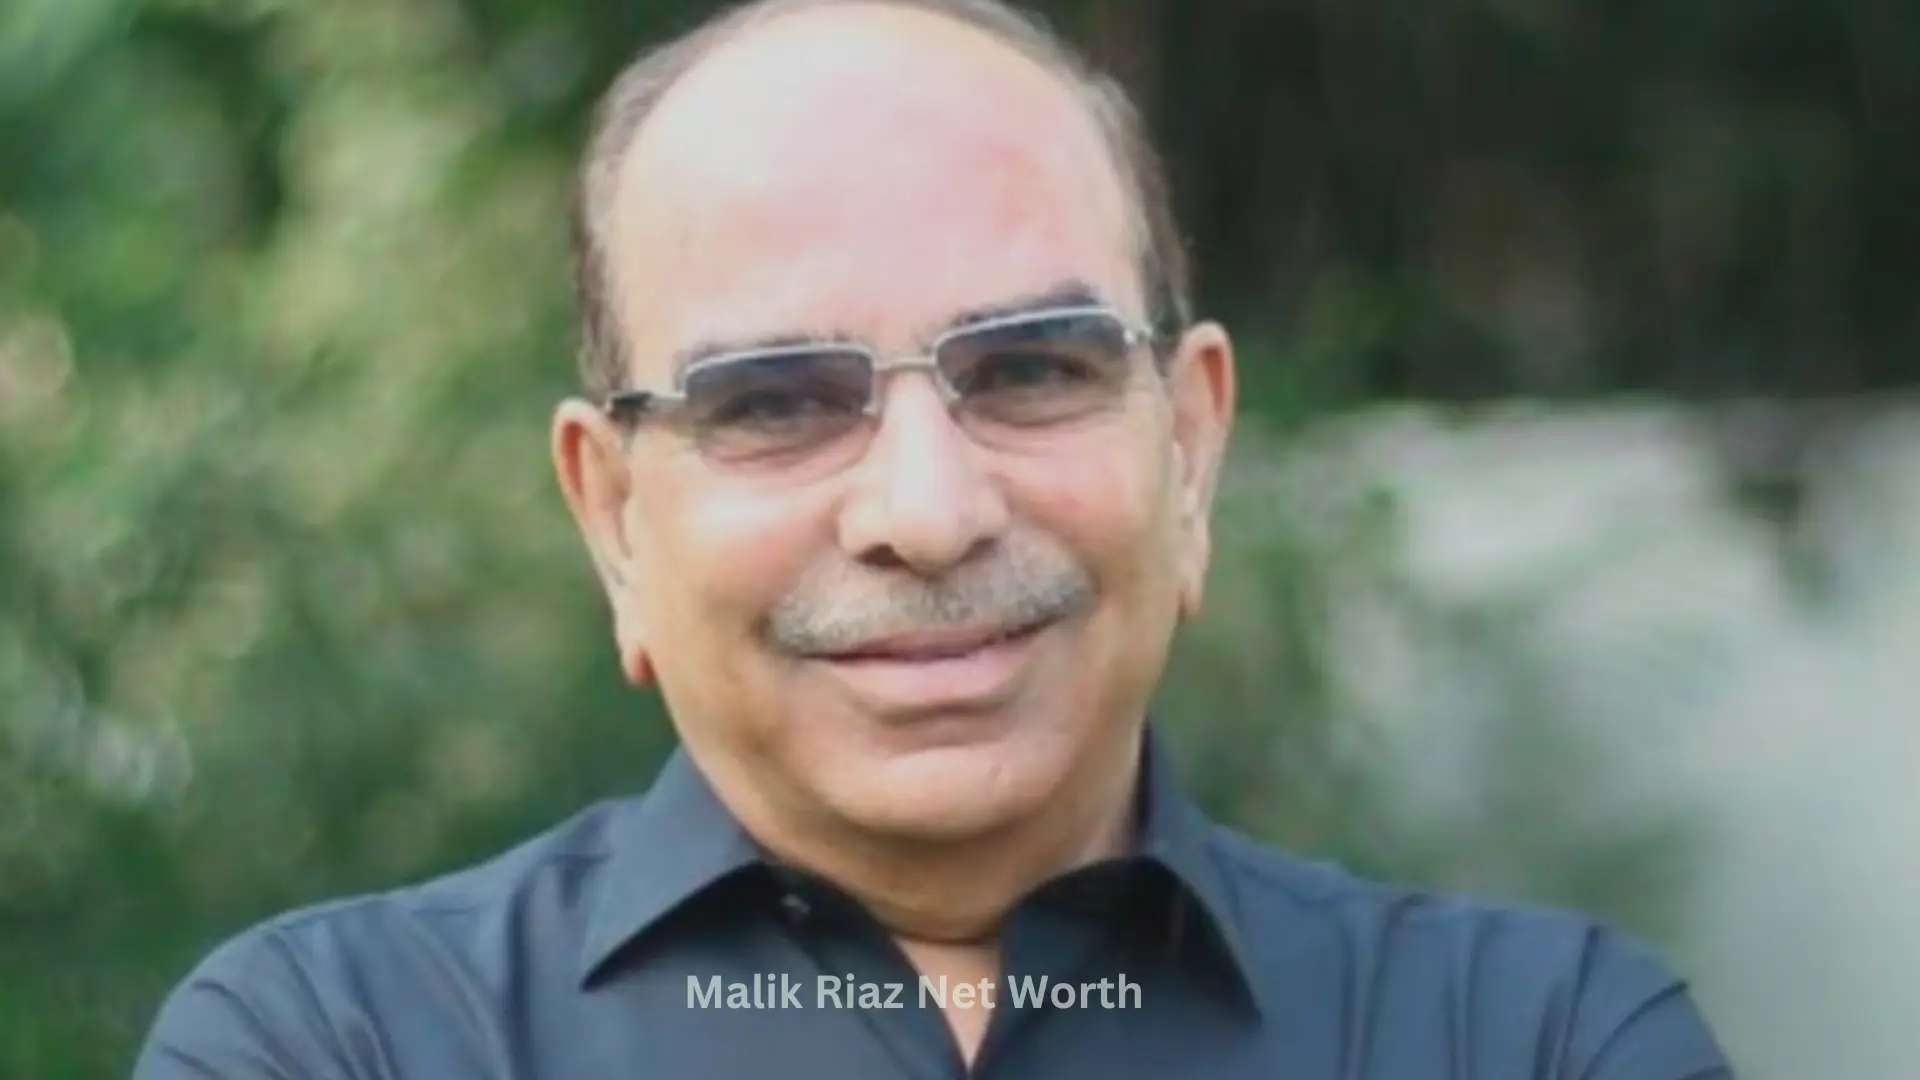 Malik Riaz Net Worth